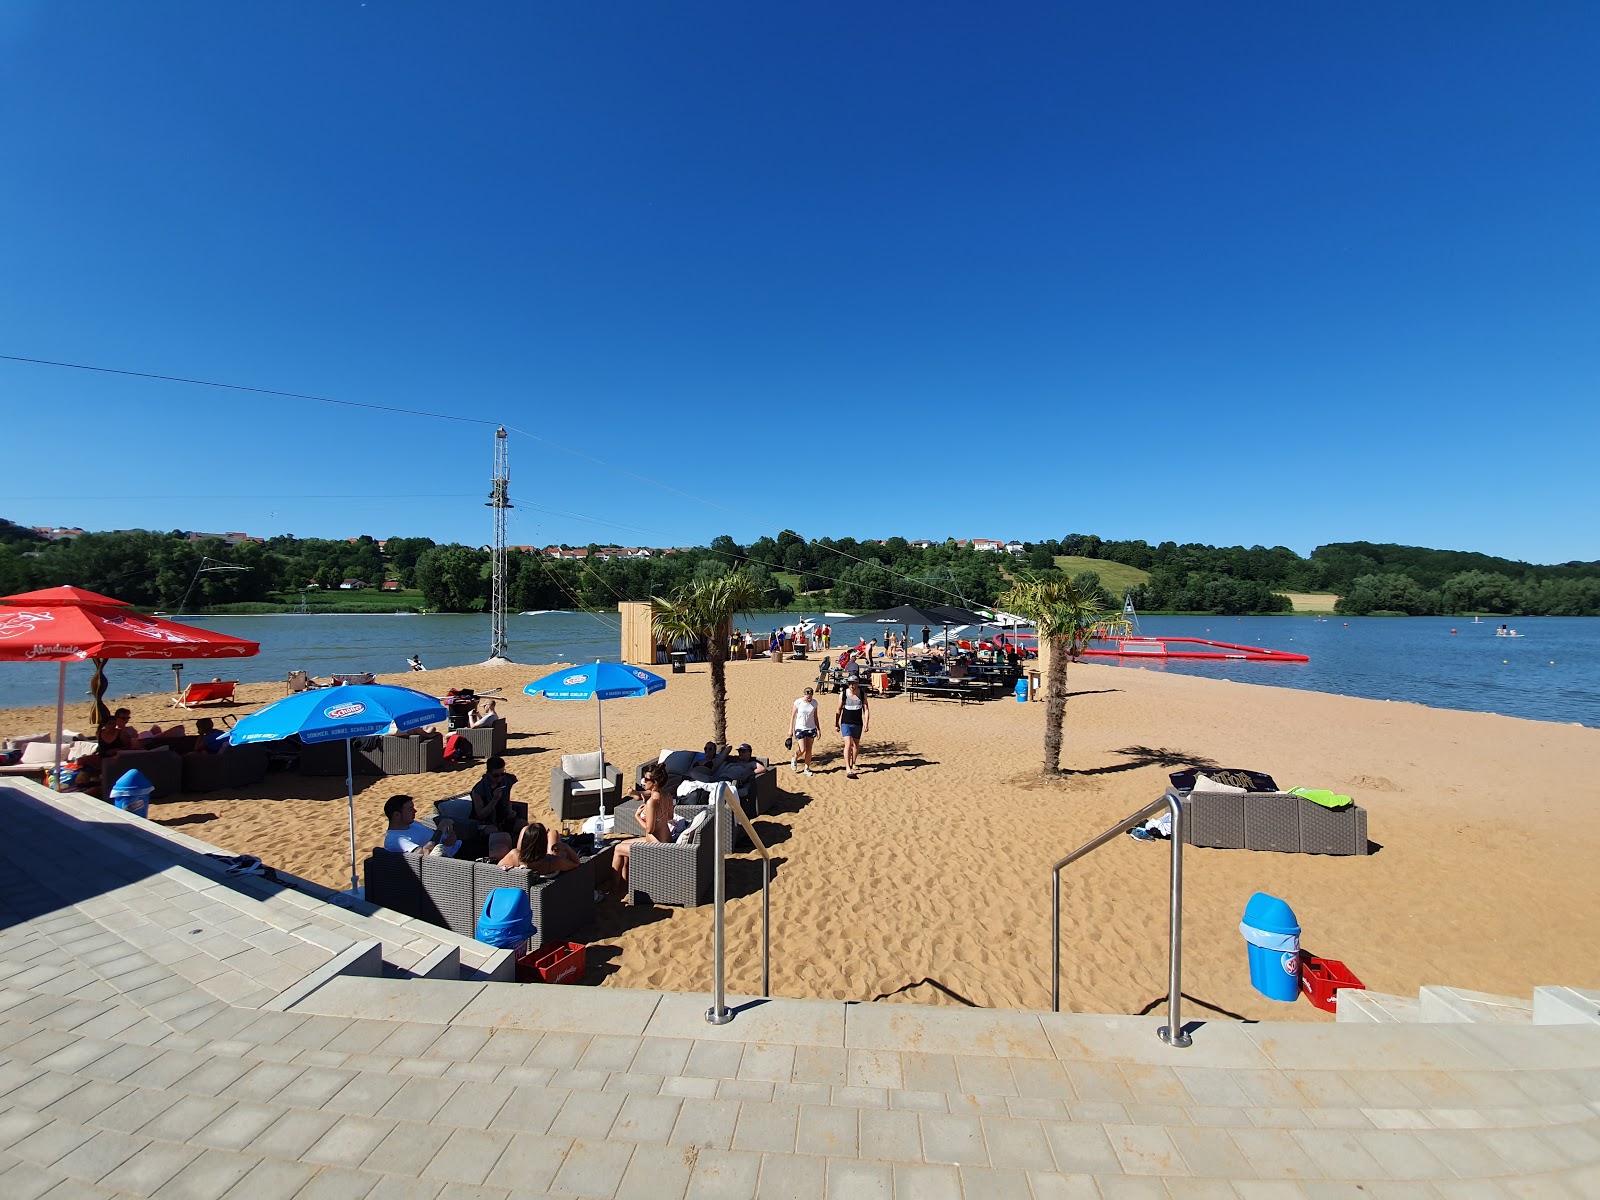 Foto di Spielplatz Wakepark Brombachsee con spiaggia spaziosa